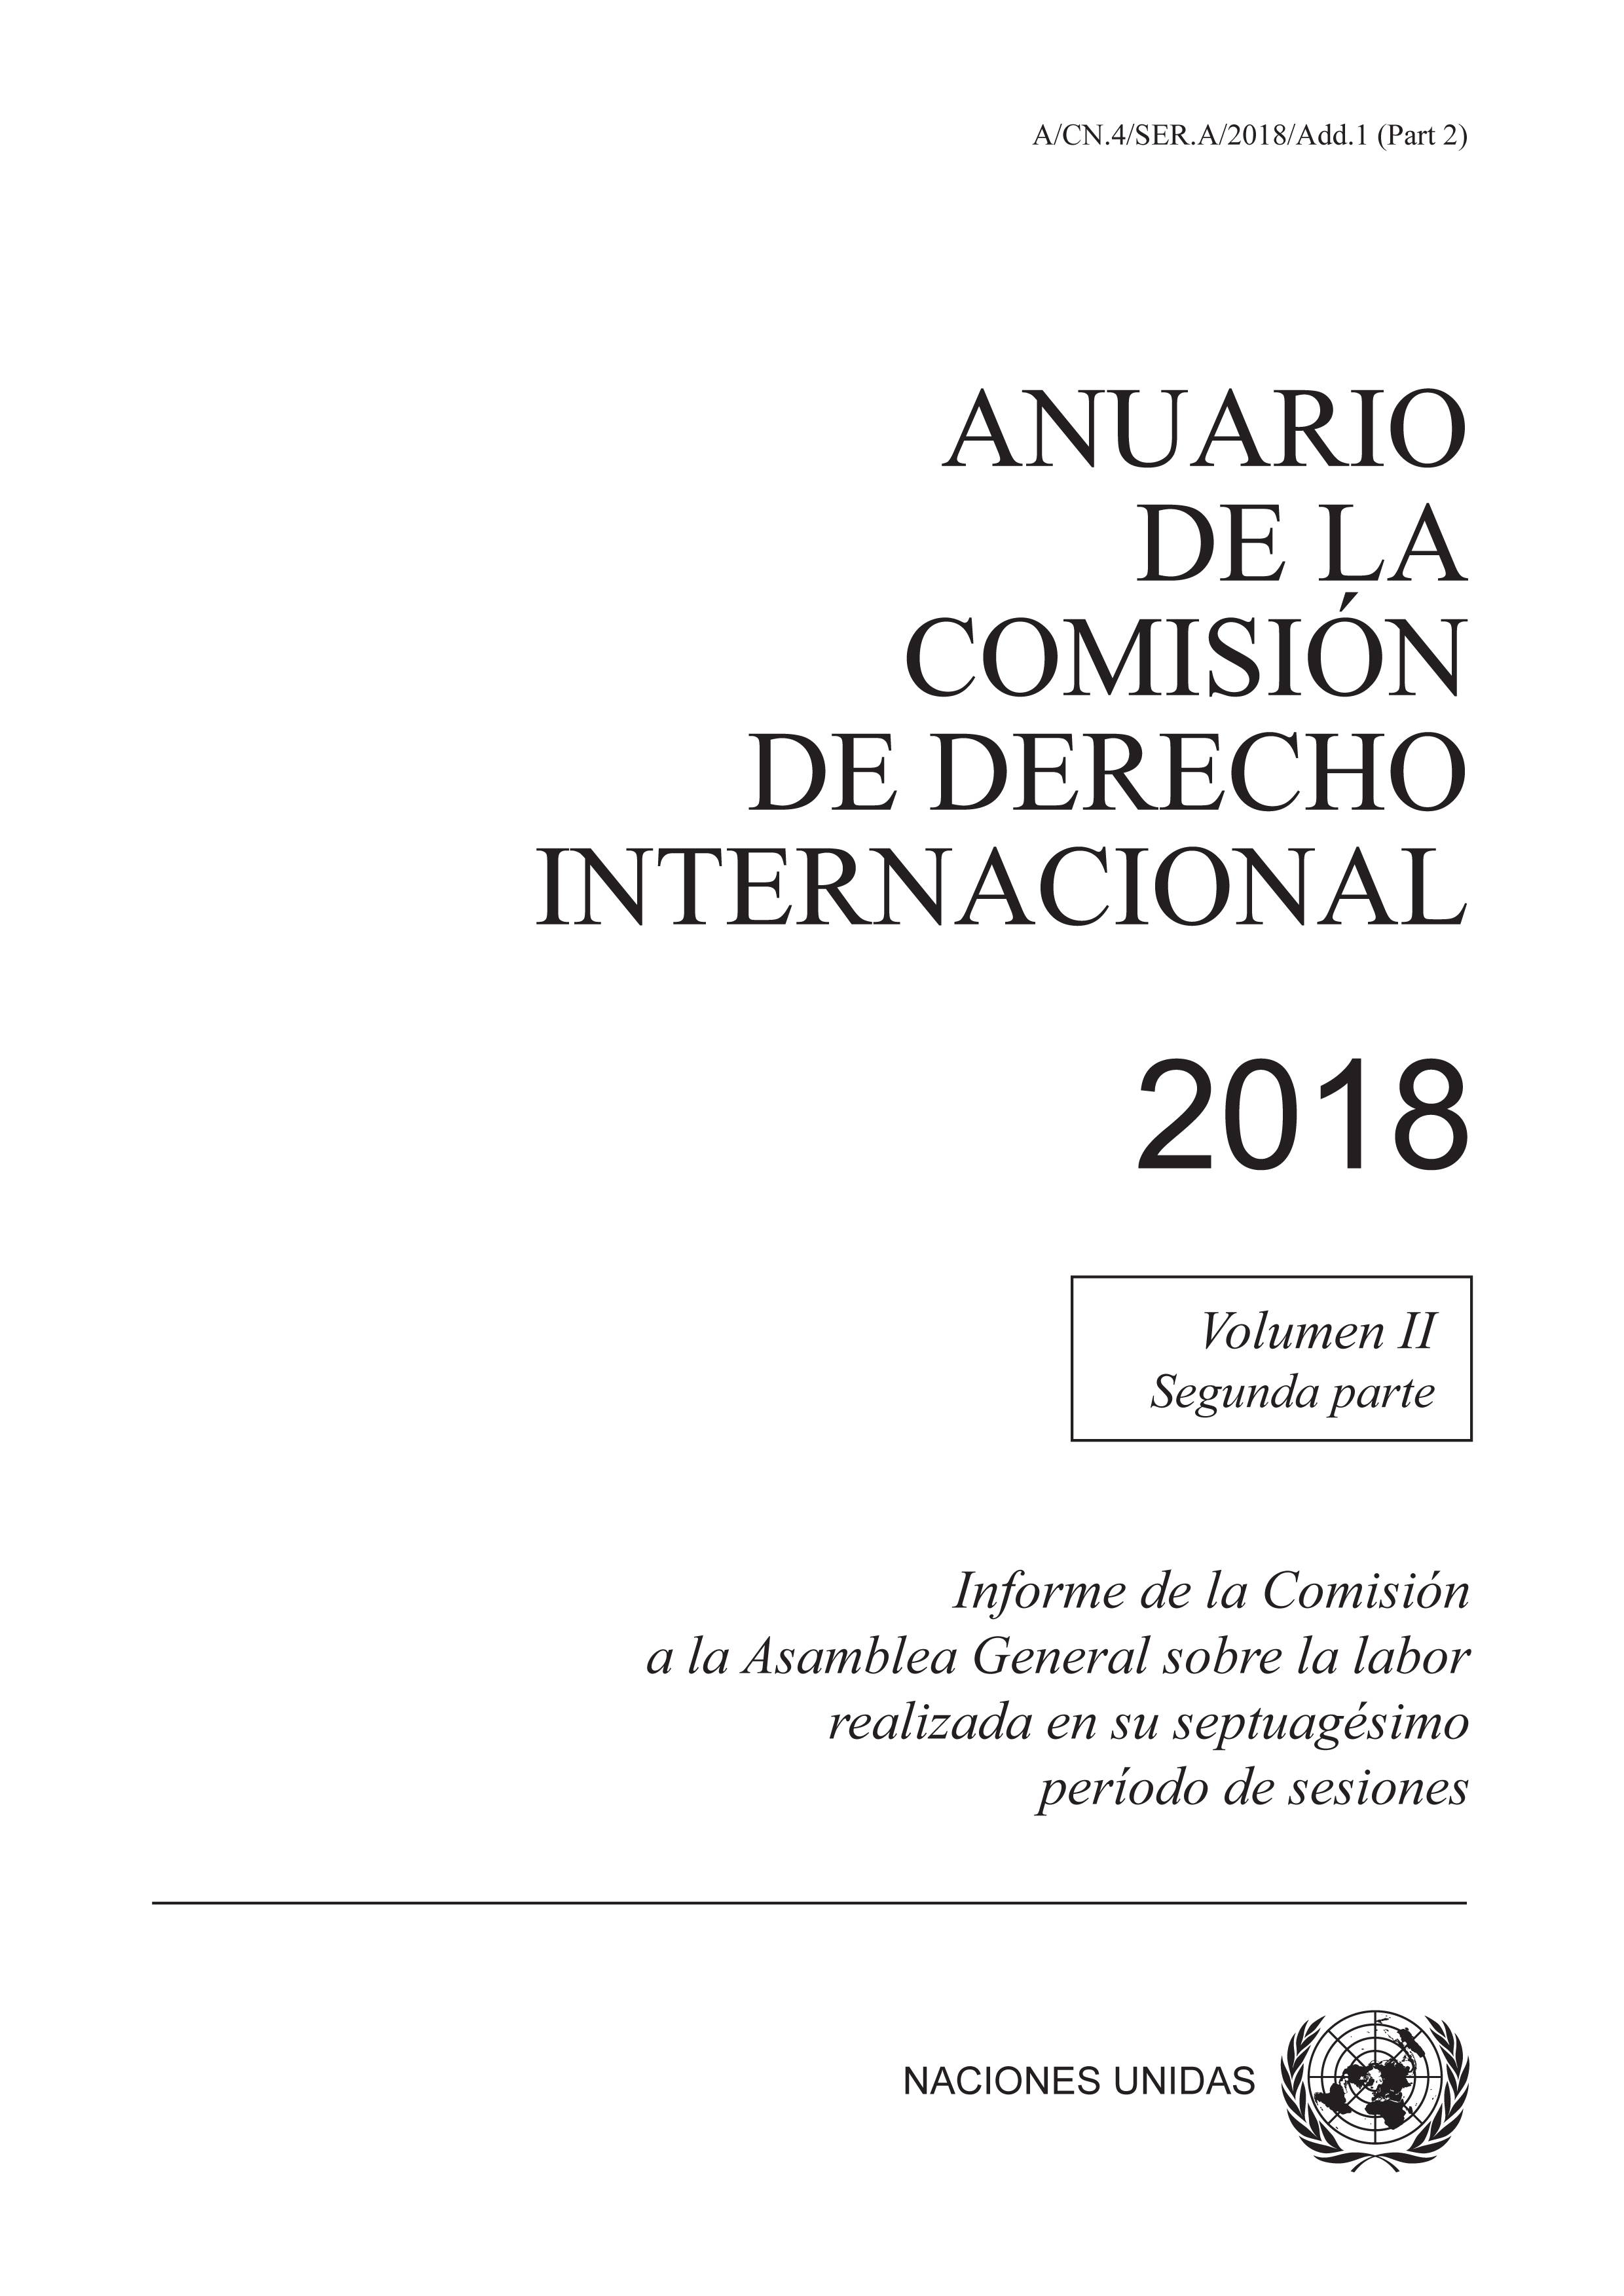 Anuario de la Comisión de Derecho Internacional | United Nations iLibrary